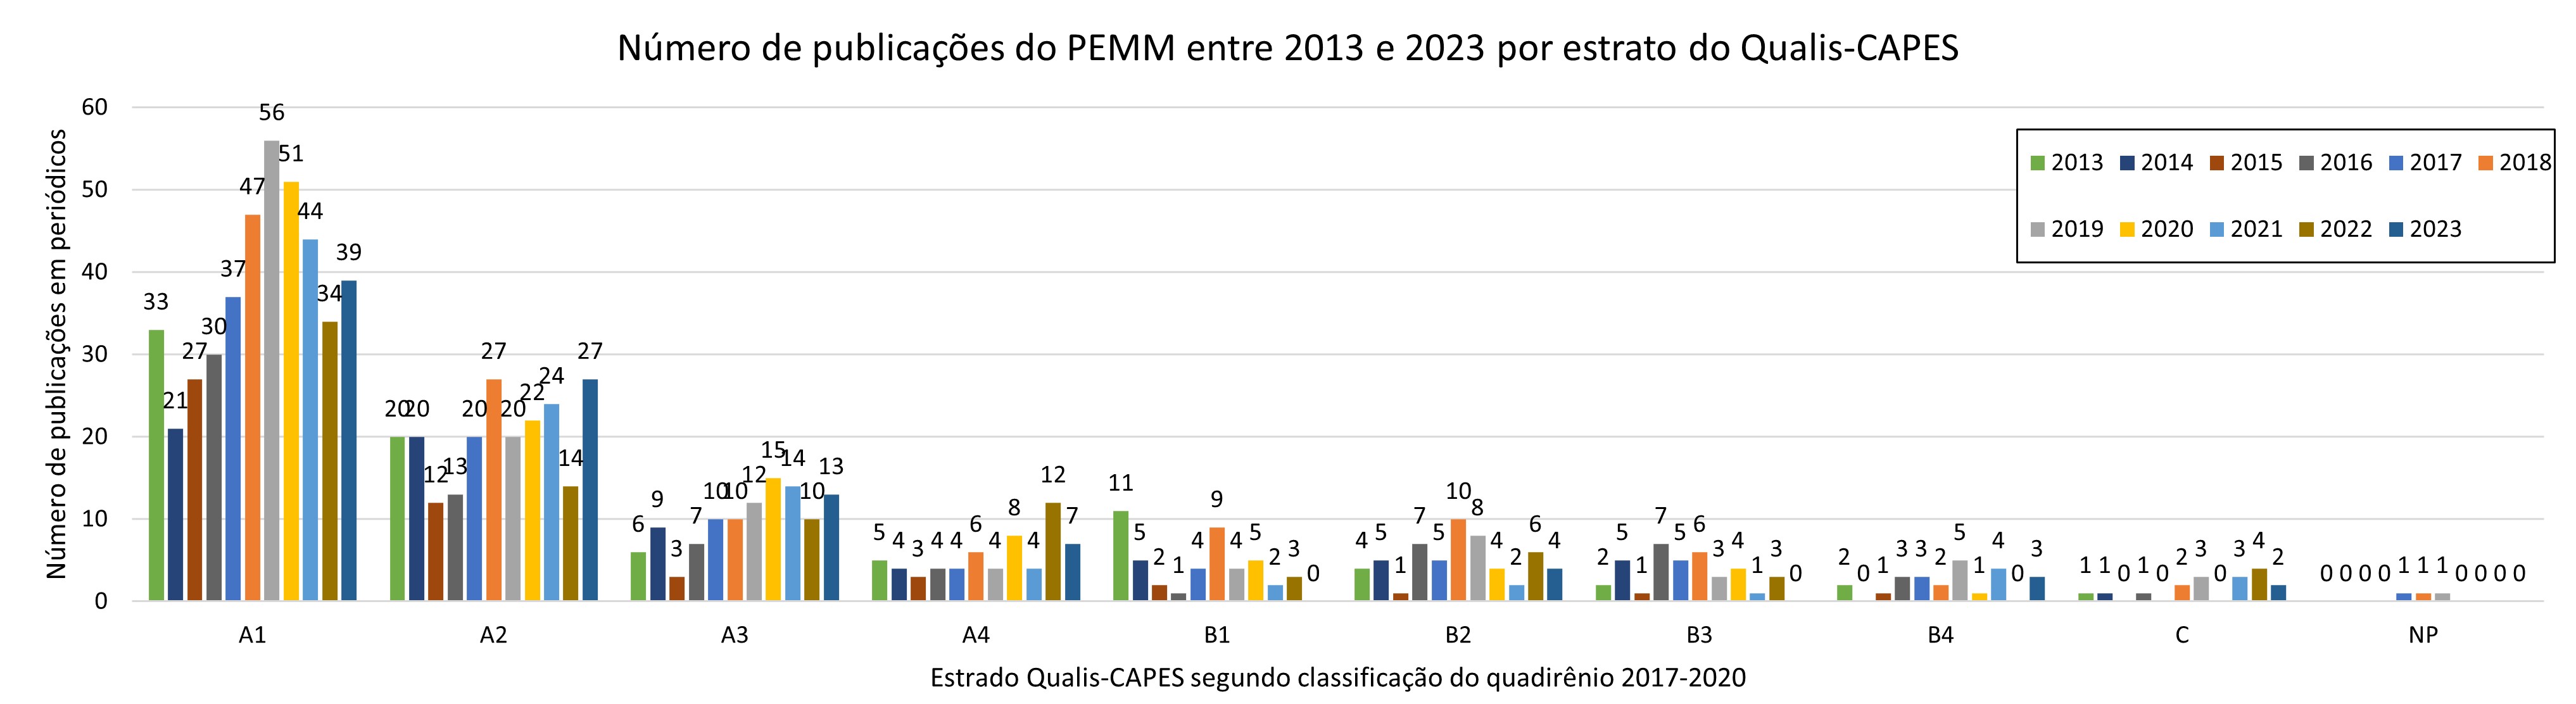 Número de publicações PEMM por estrato Qualis 2023